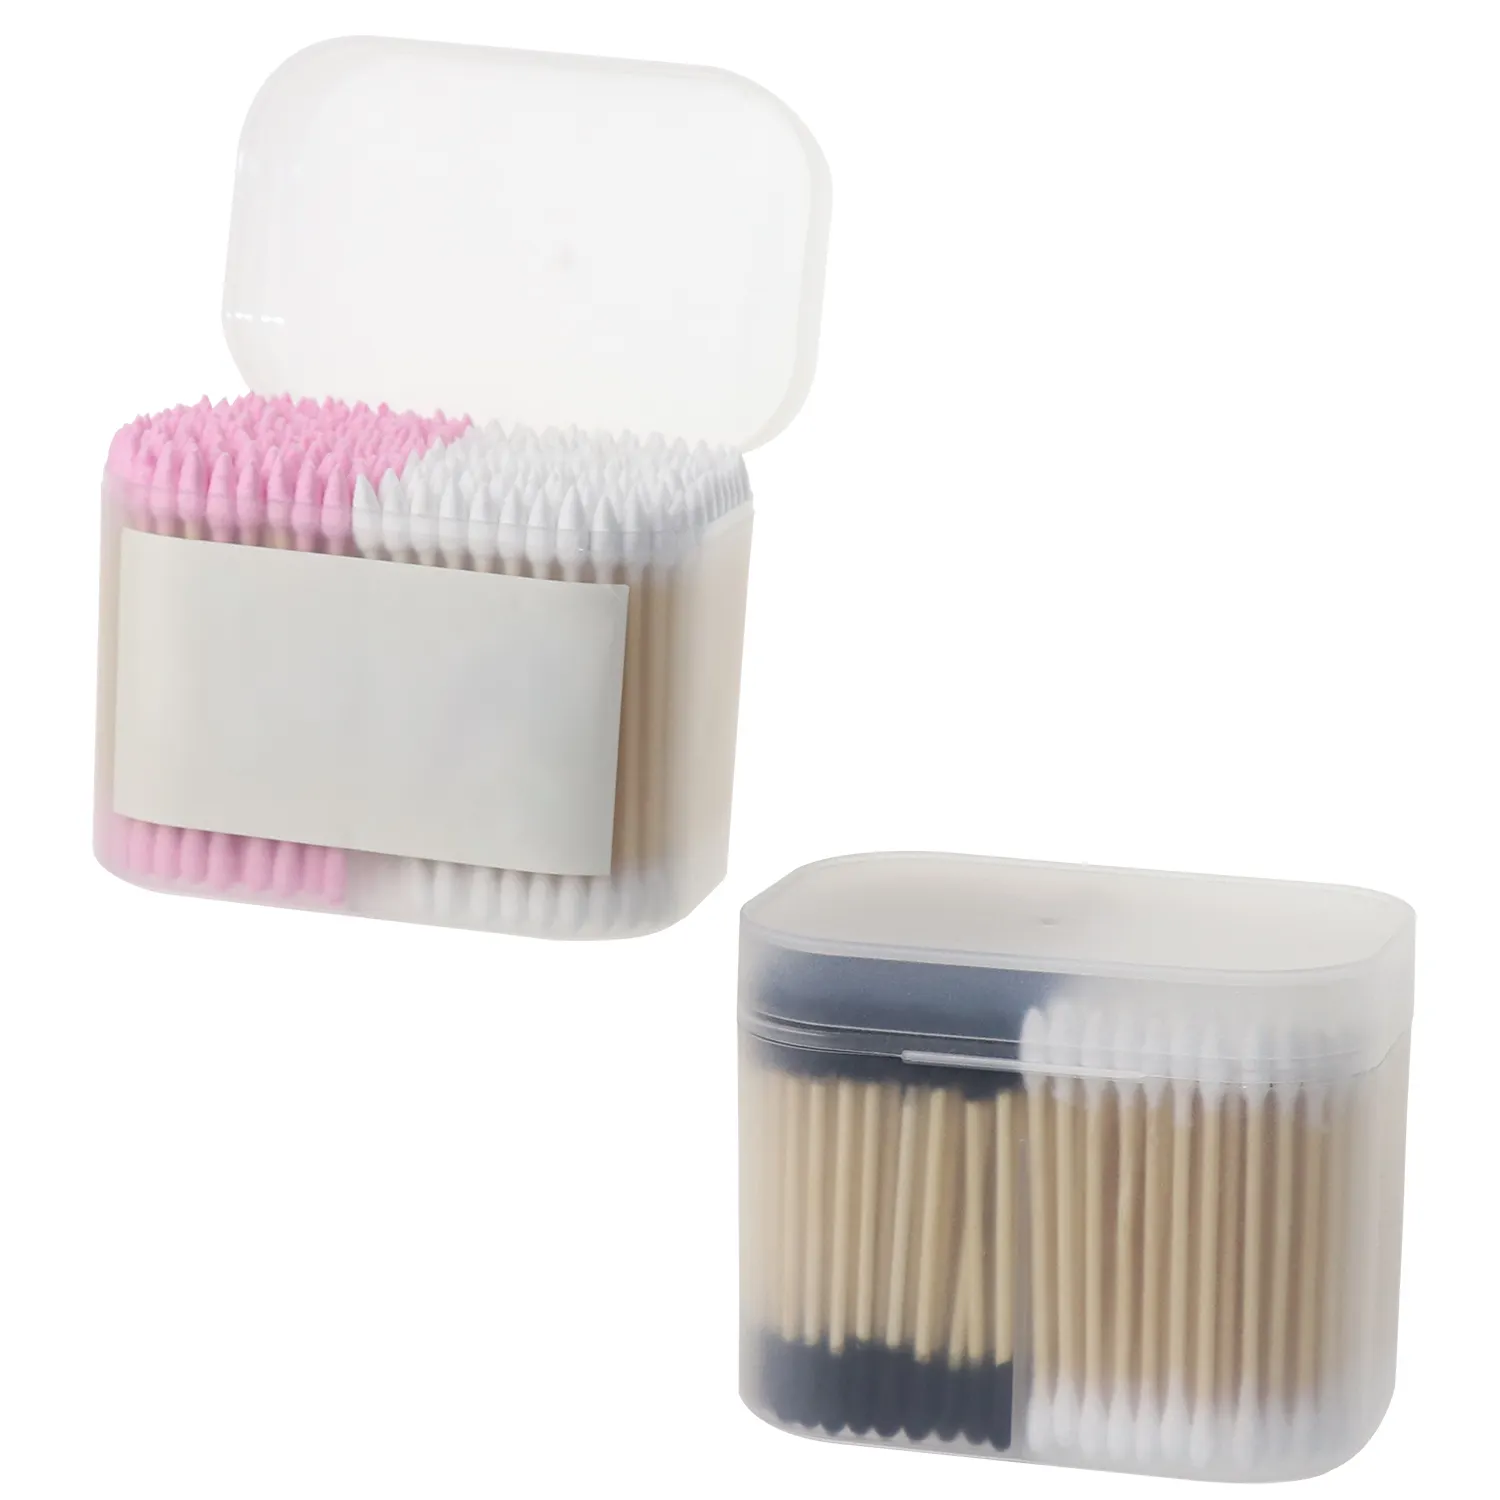 प्लास्टिक बॉक्सिंग बांस की छड़ी डबल अध्यक्षता में दो रंग कपास Swabs कॉस्मेटिक सफाई कपास Swabs